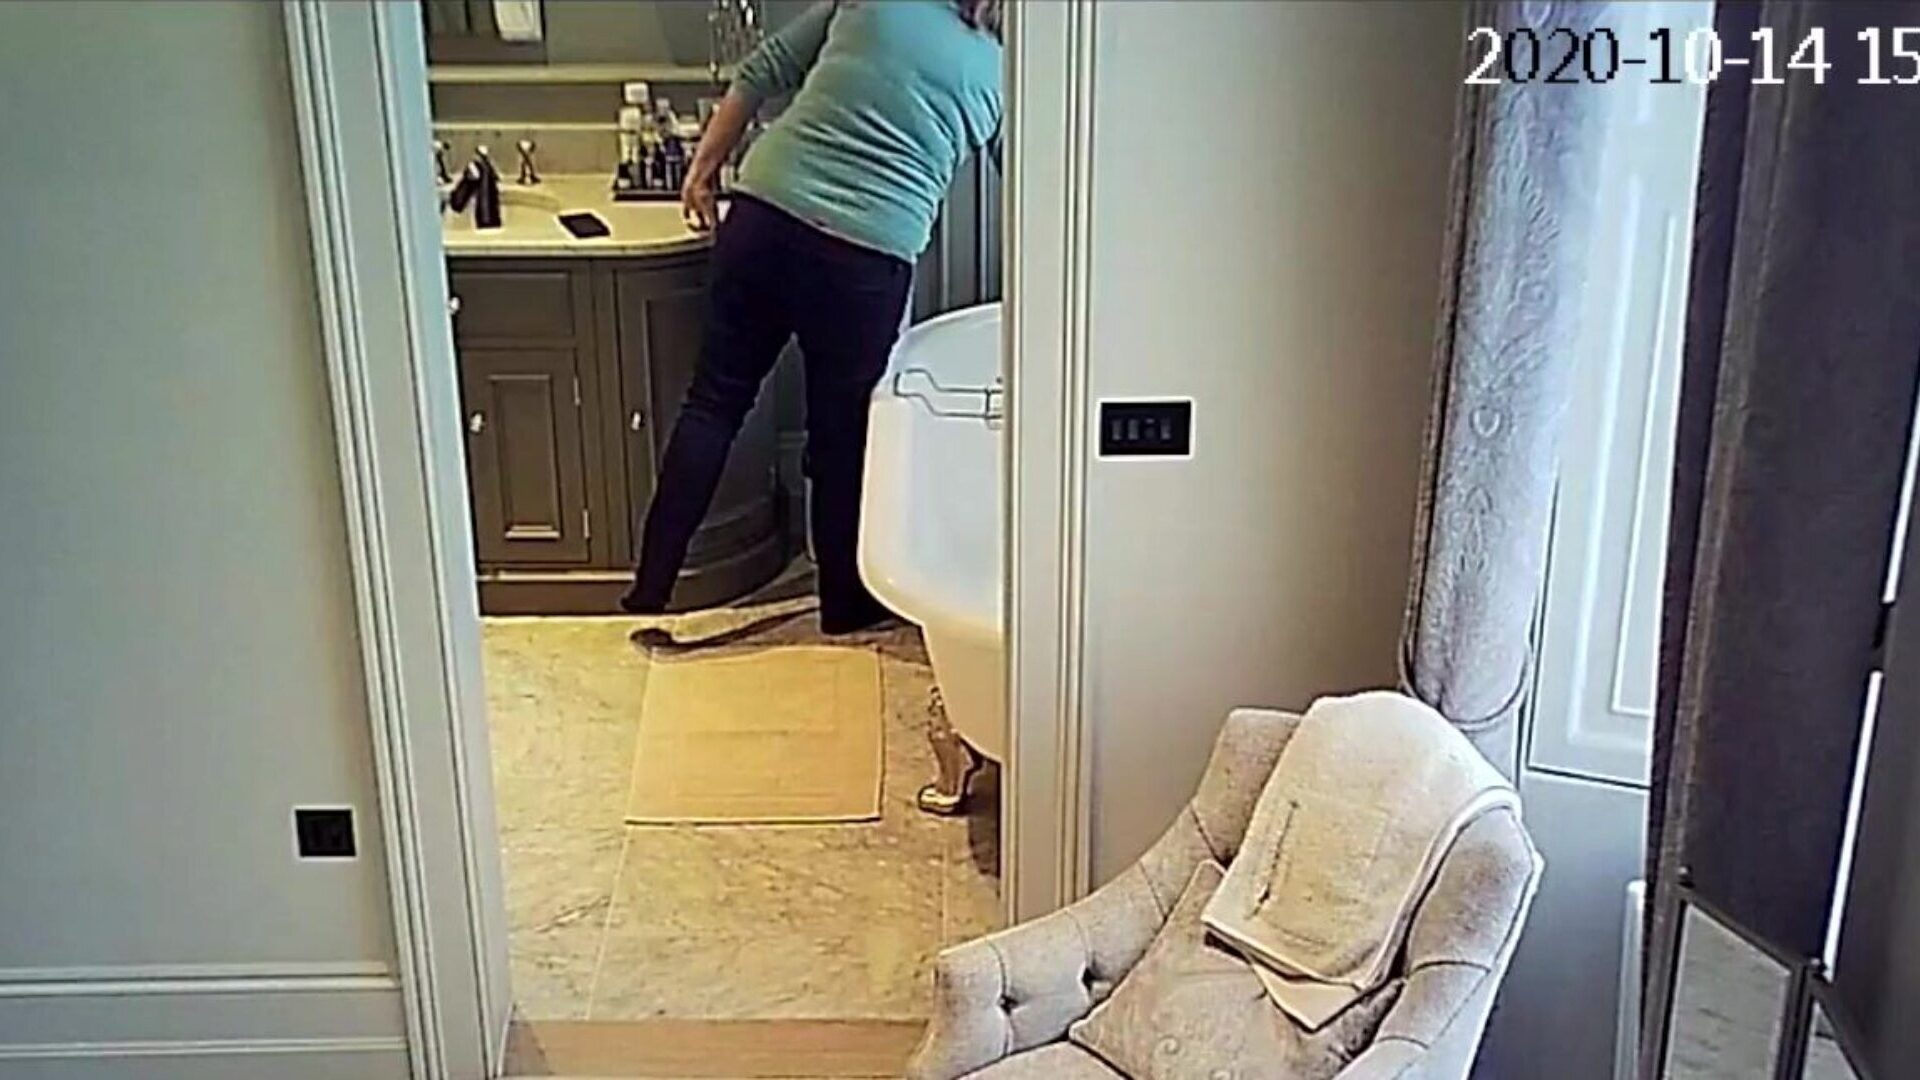 ipcam starsze mamuśki toalety bierze kąpiele, że jest na kamery bezpieczeństwa